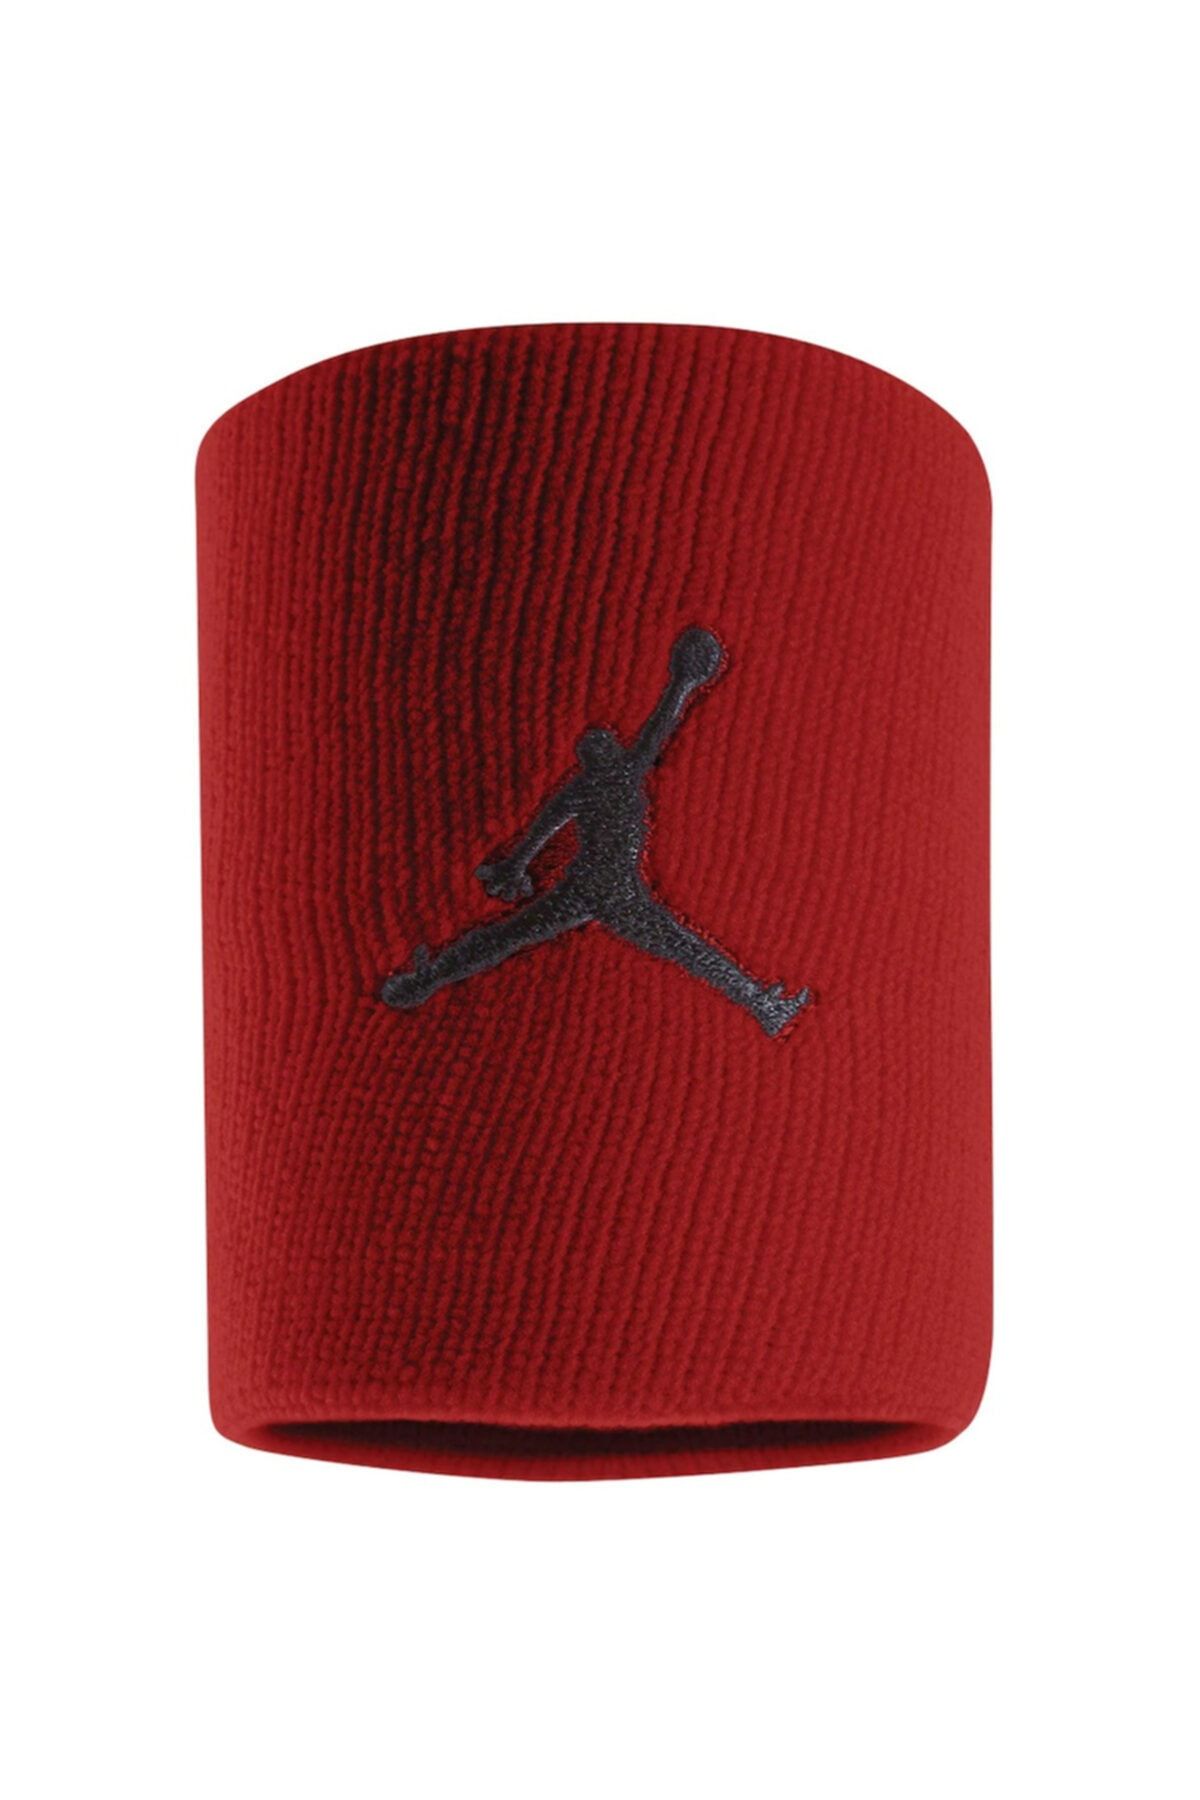 Nike Jordan Jumpman Wrıstbands Gym Red/black Osfm Bileklik